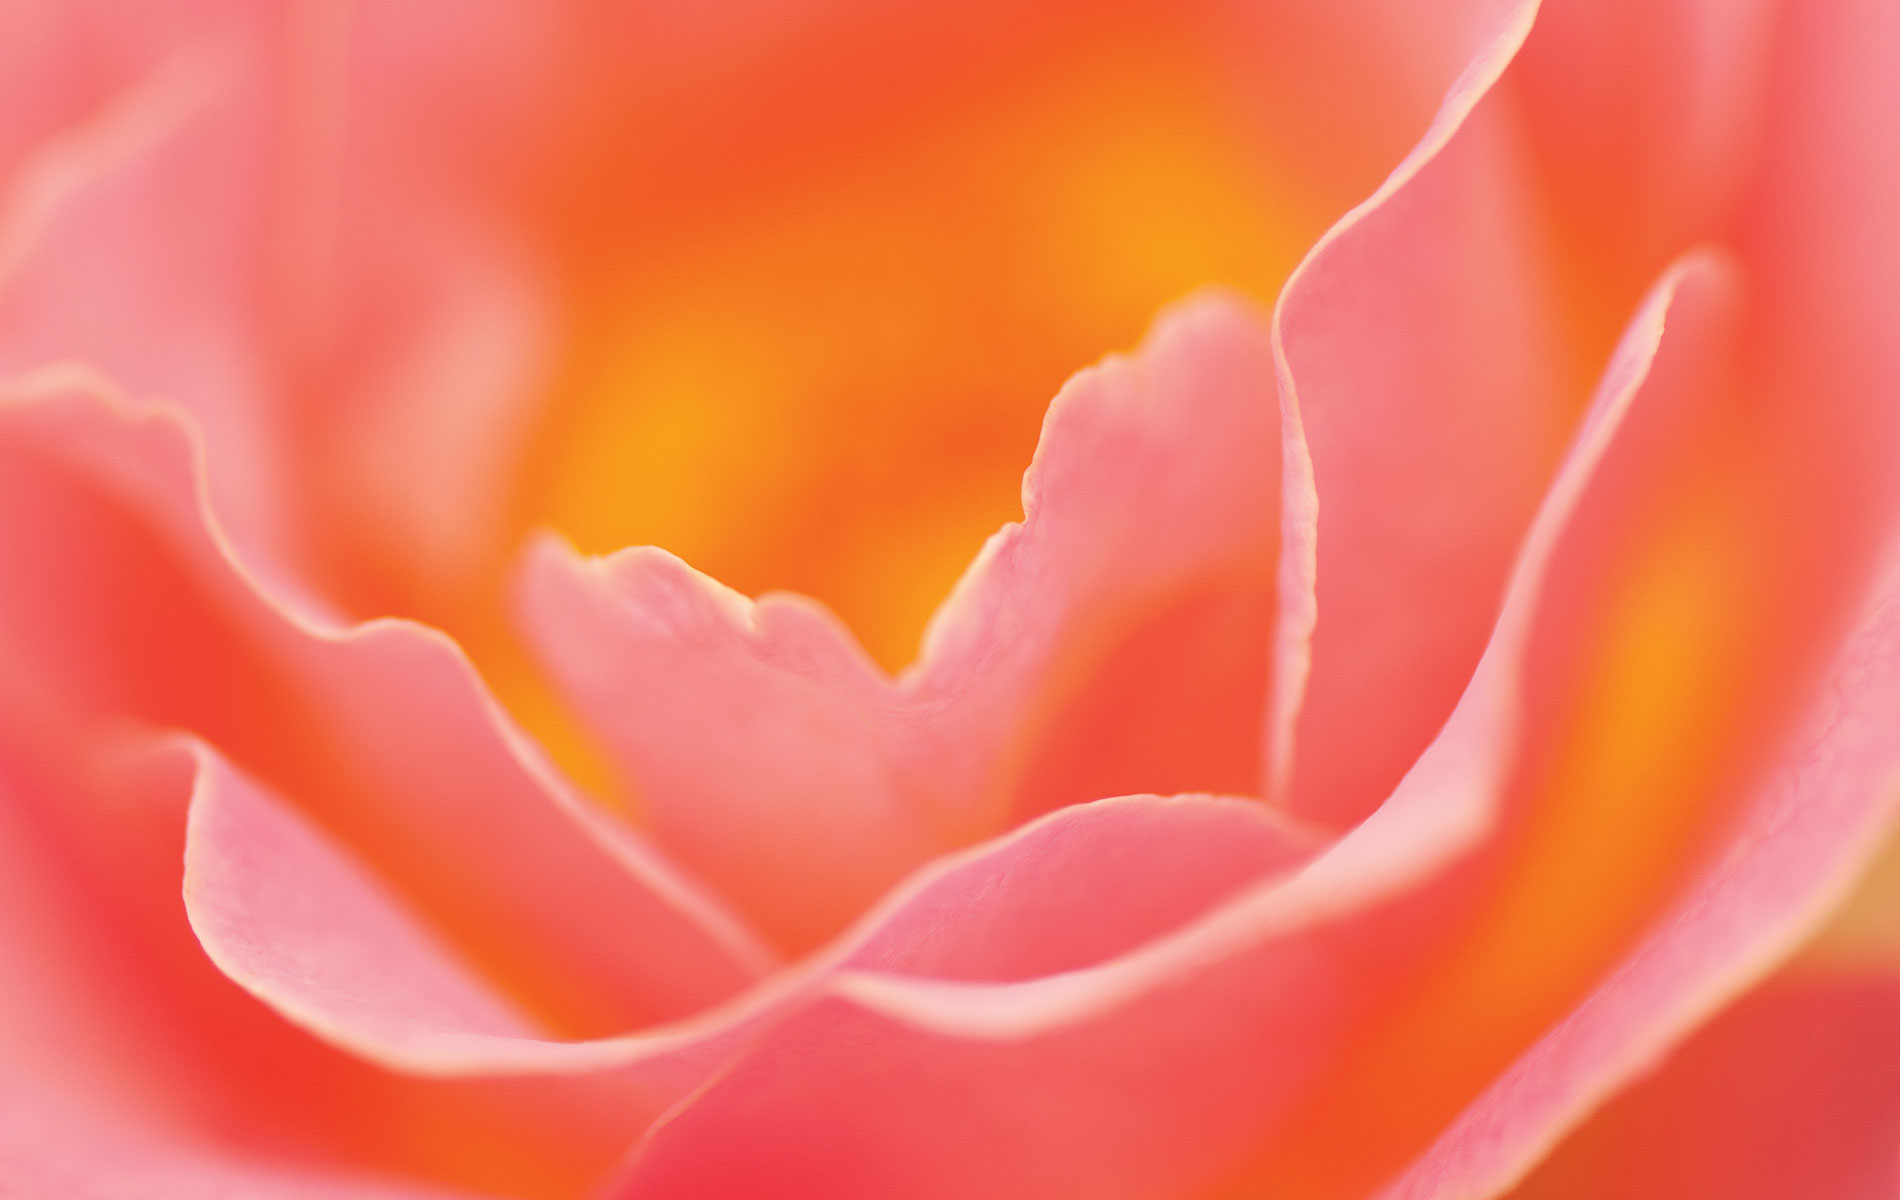 VIE Magazine Bellingrath Gardens pink and orange flower Photo by Troy Ruprecht